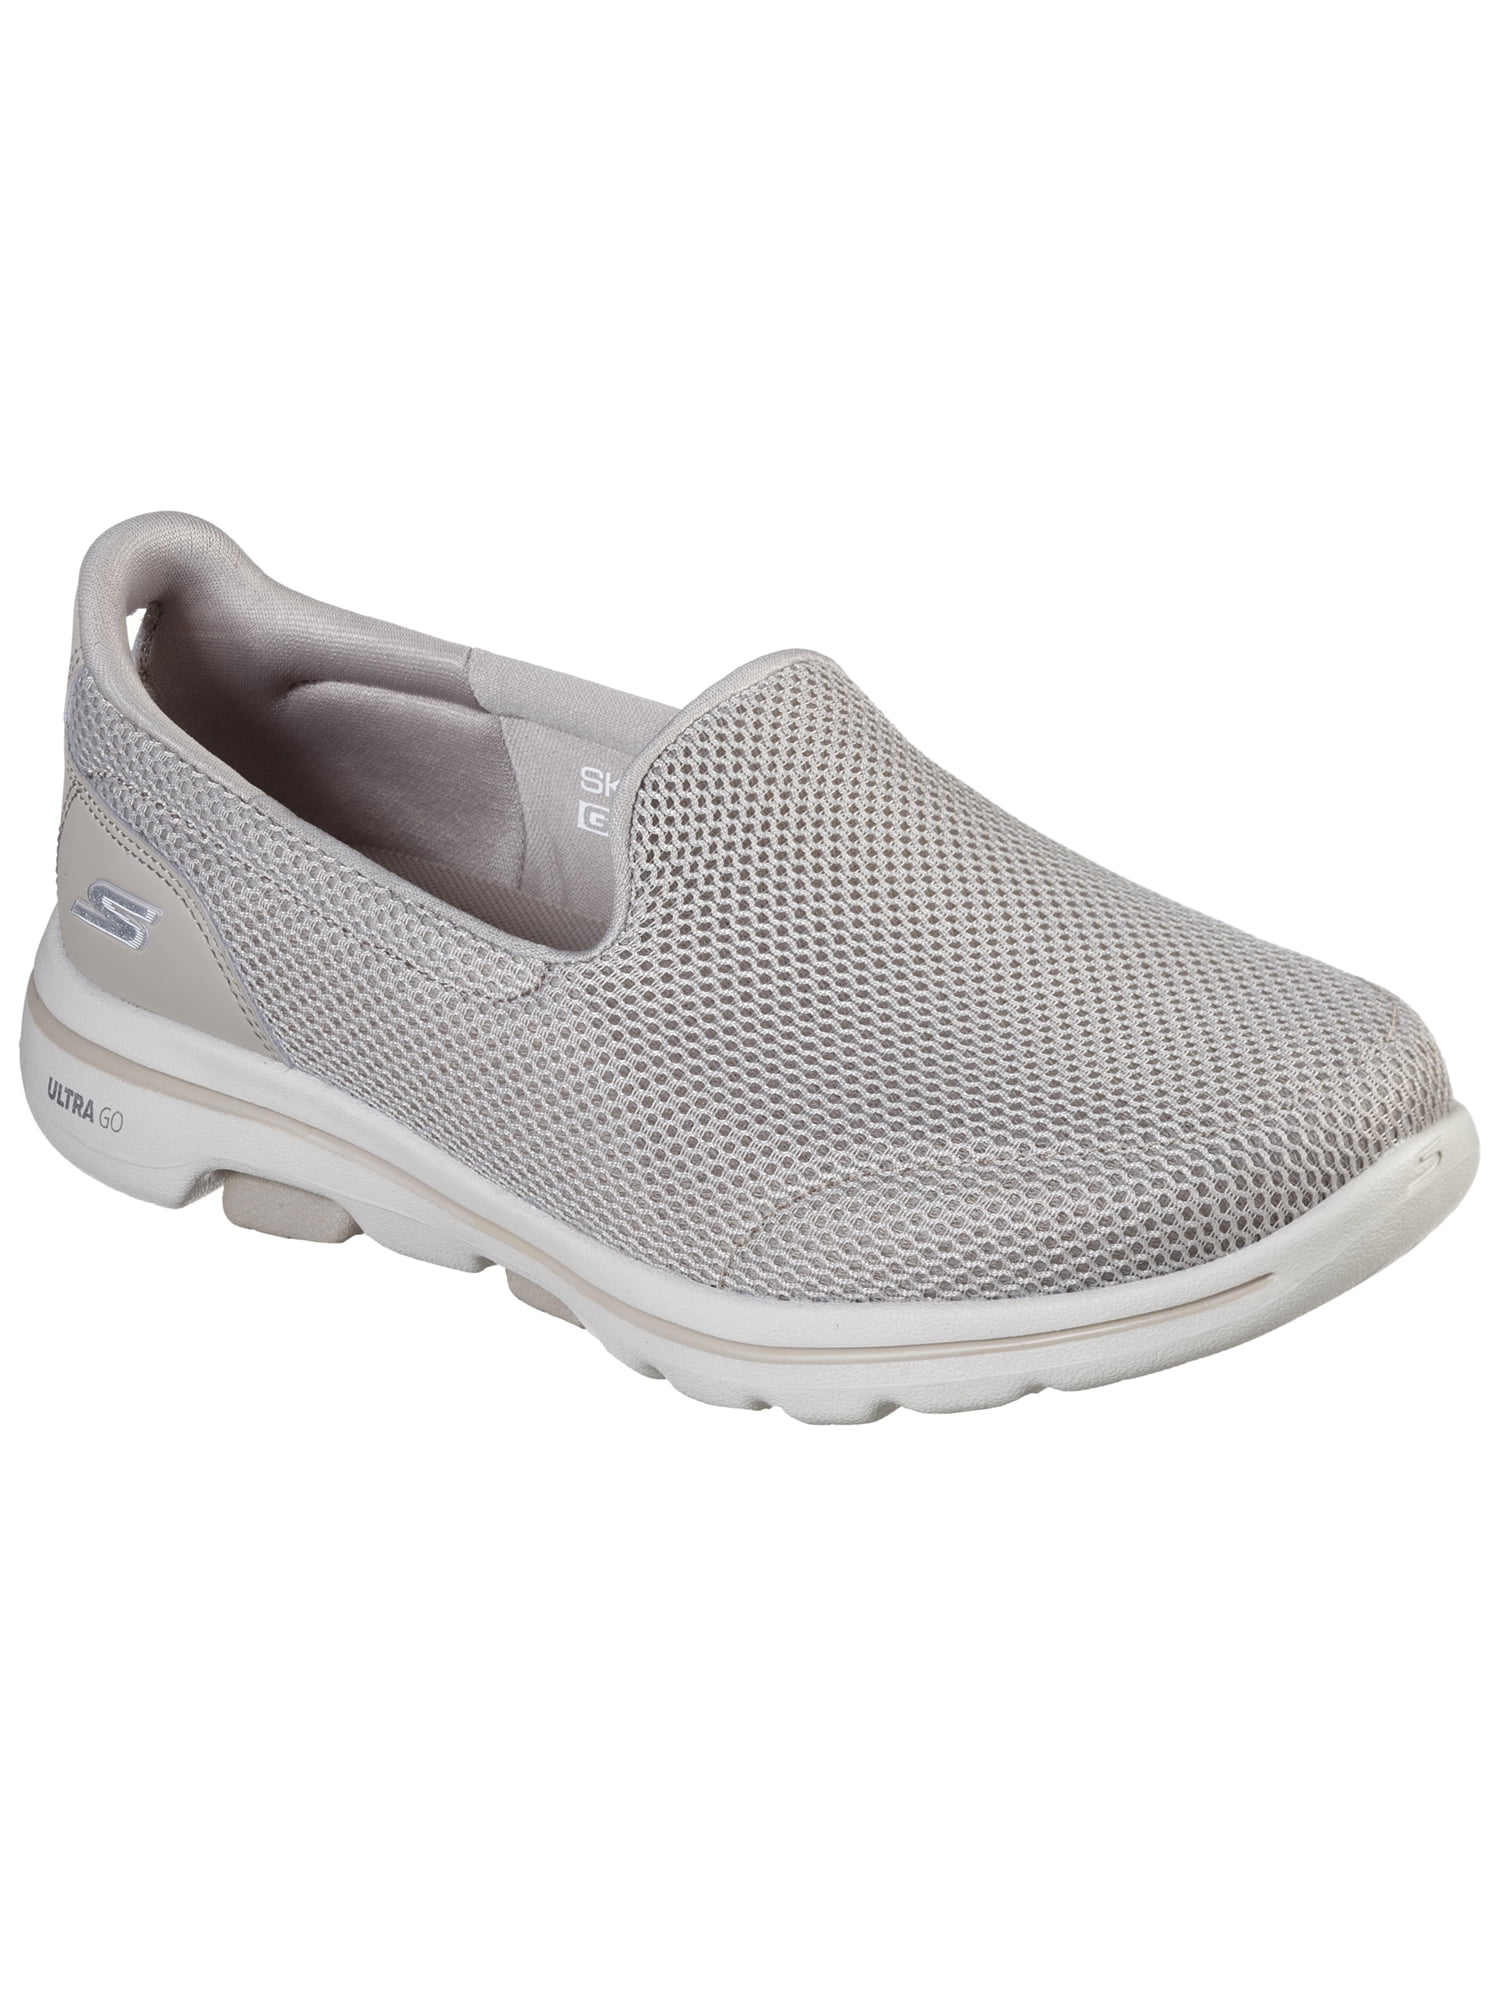 Skechers GOwalk 5 Comfort Shoe (Wide Width Available) Walmart.com